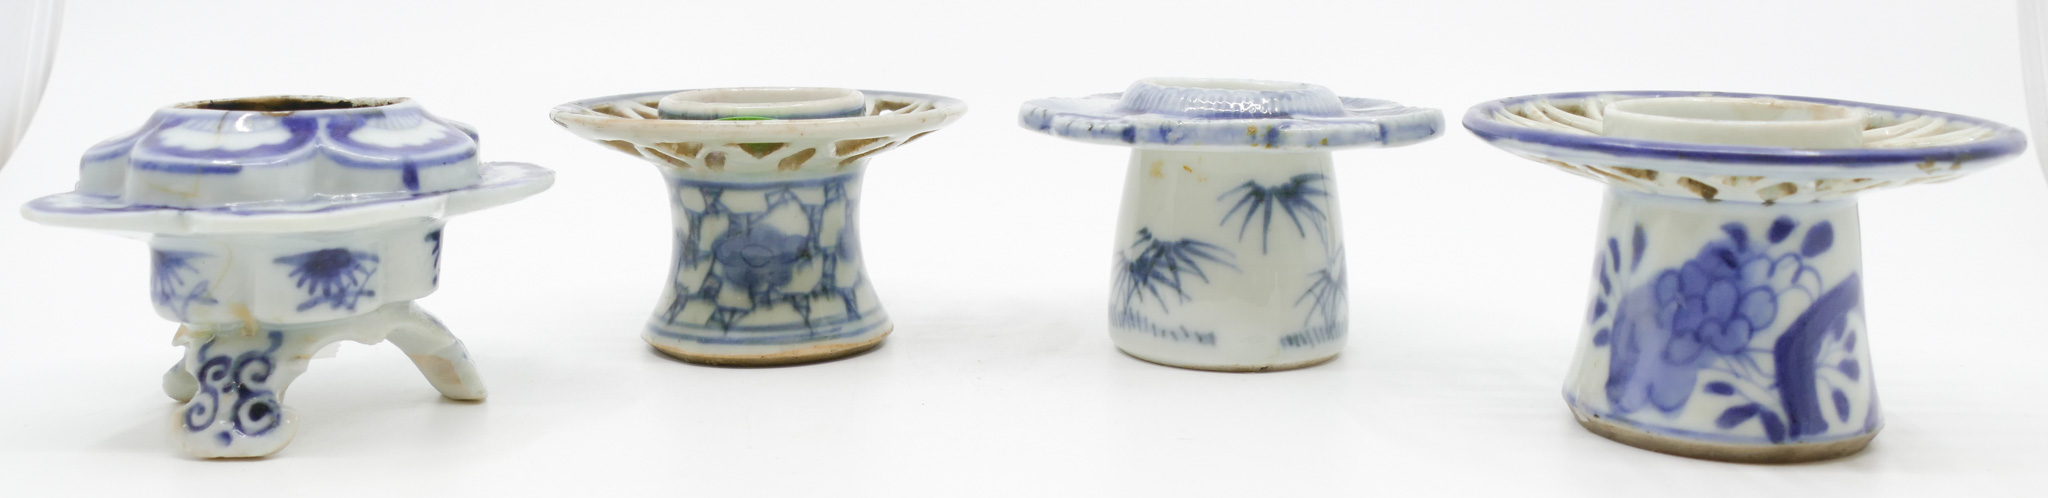 4pc Antique Japanese B&W Porcelain Cup